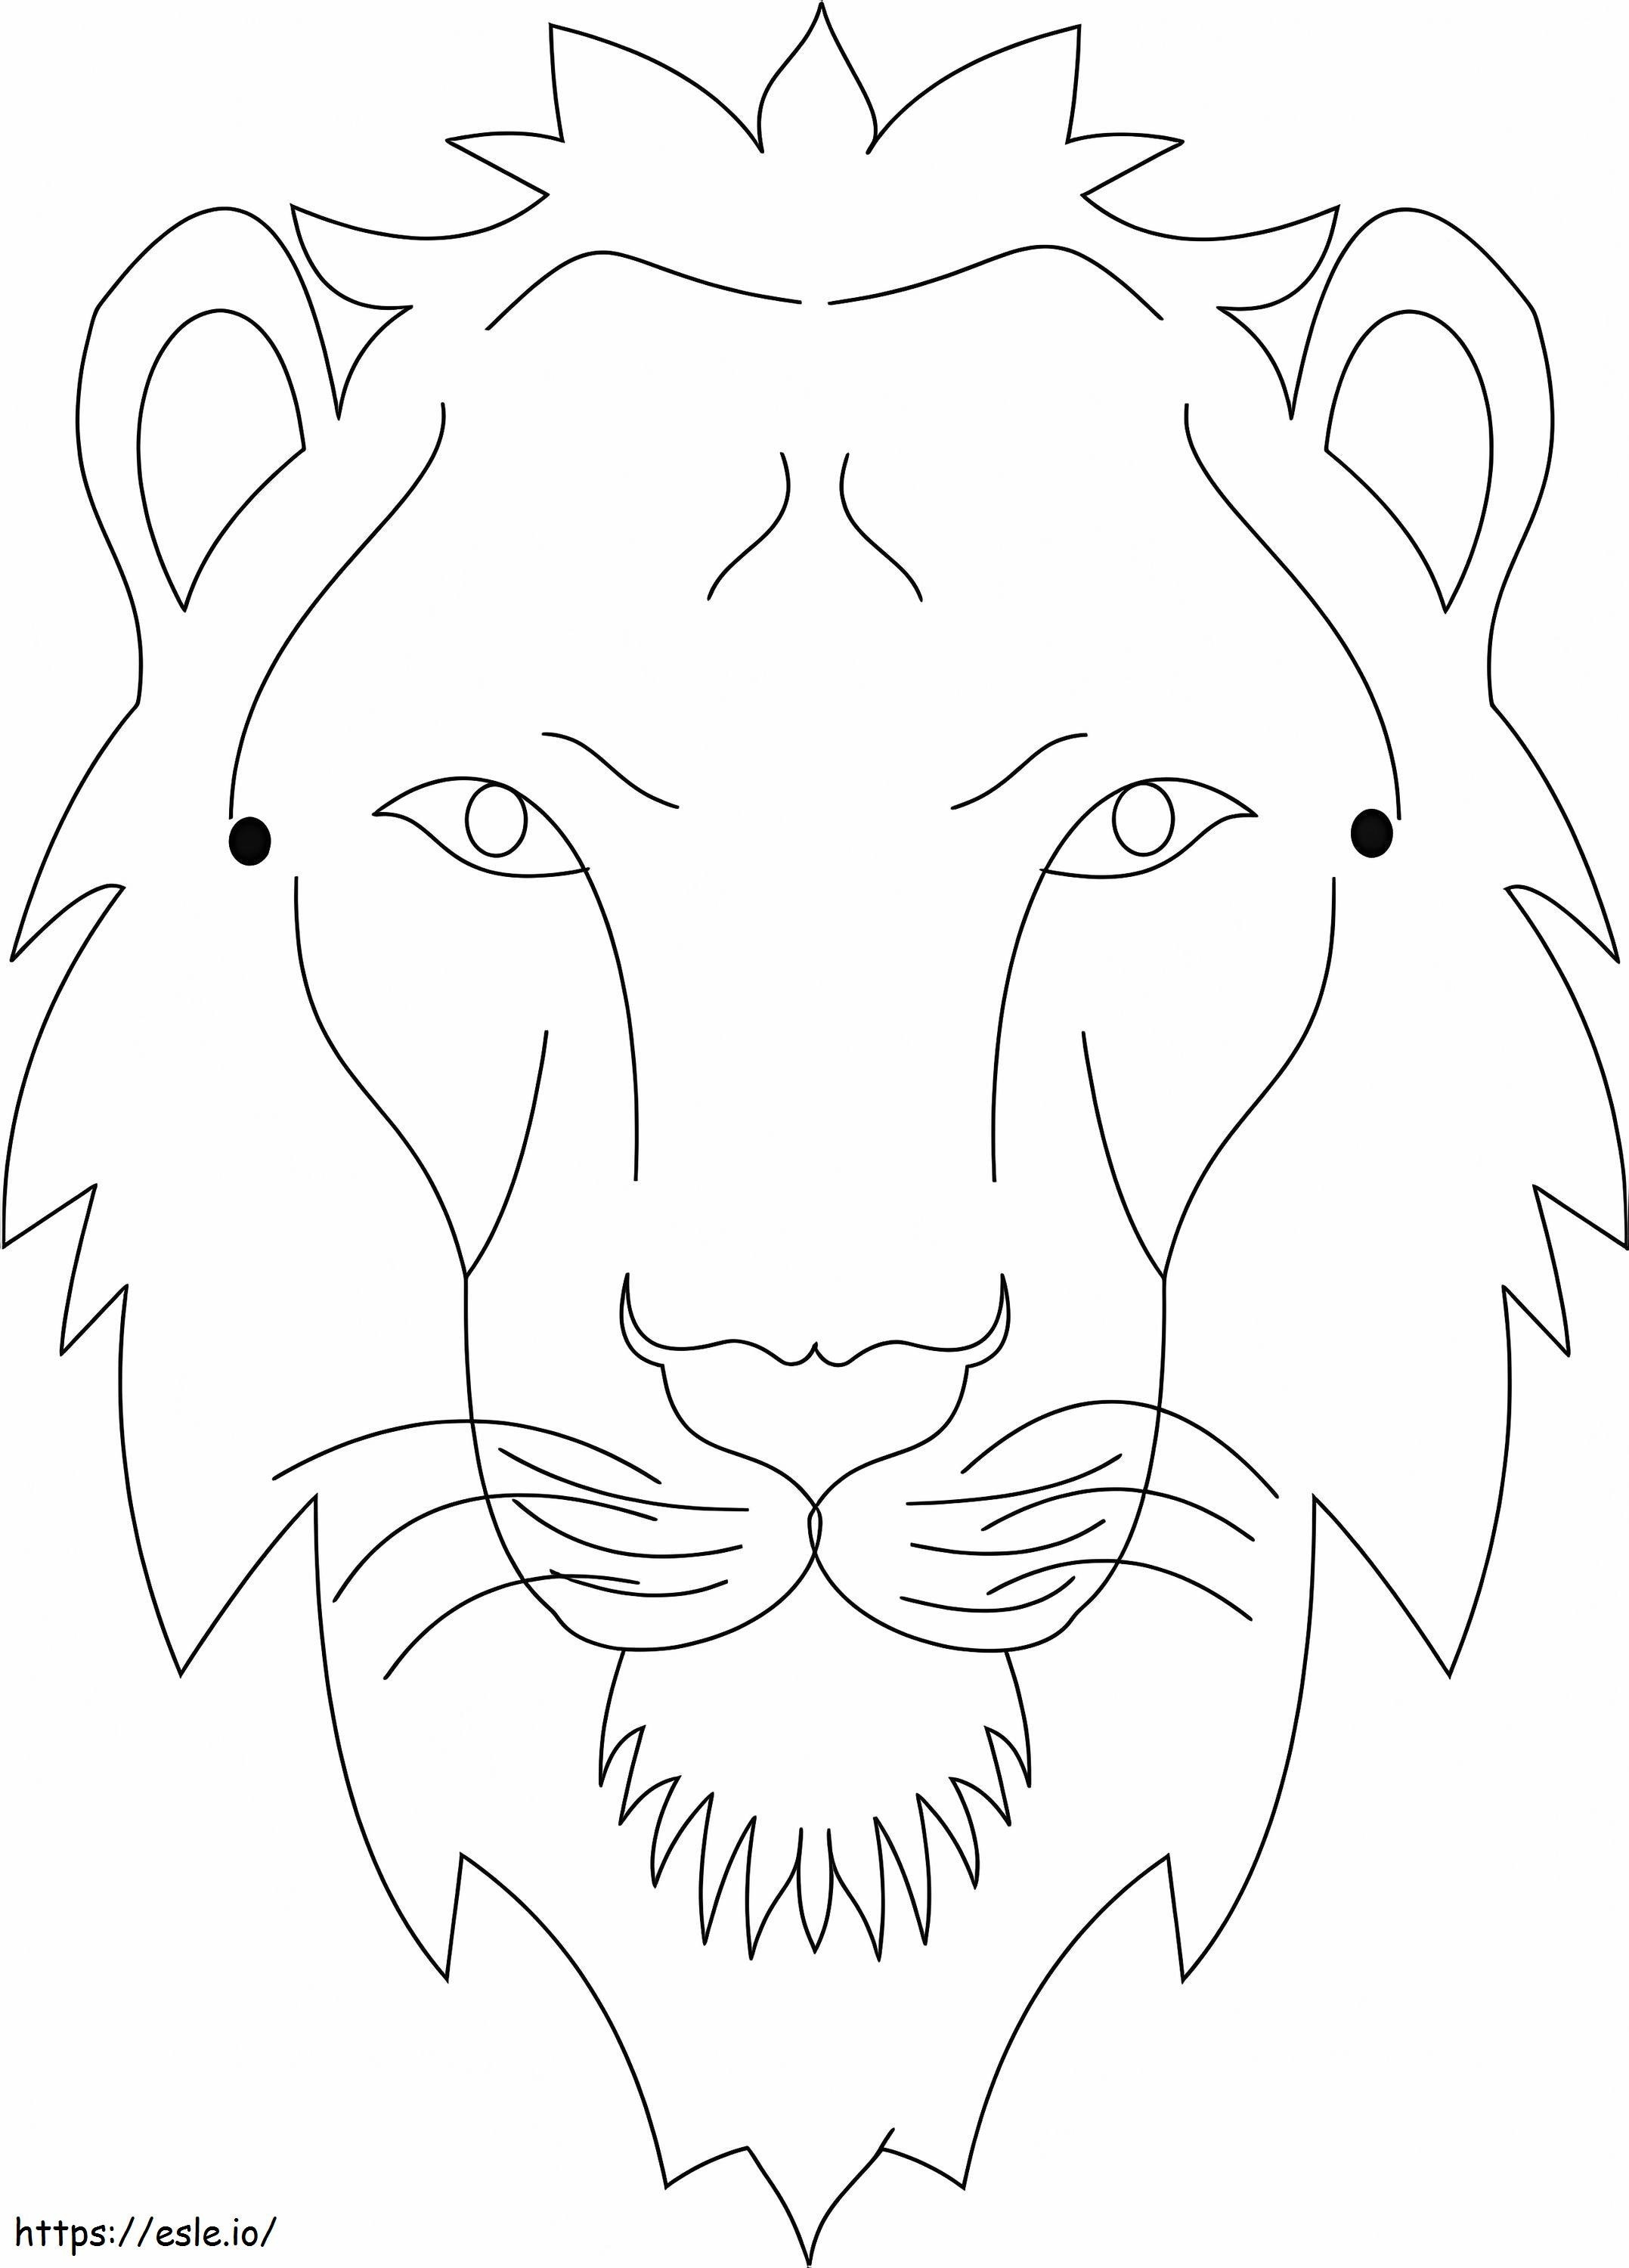 Coloriage Visage de lion facile à imprimer dessin